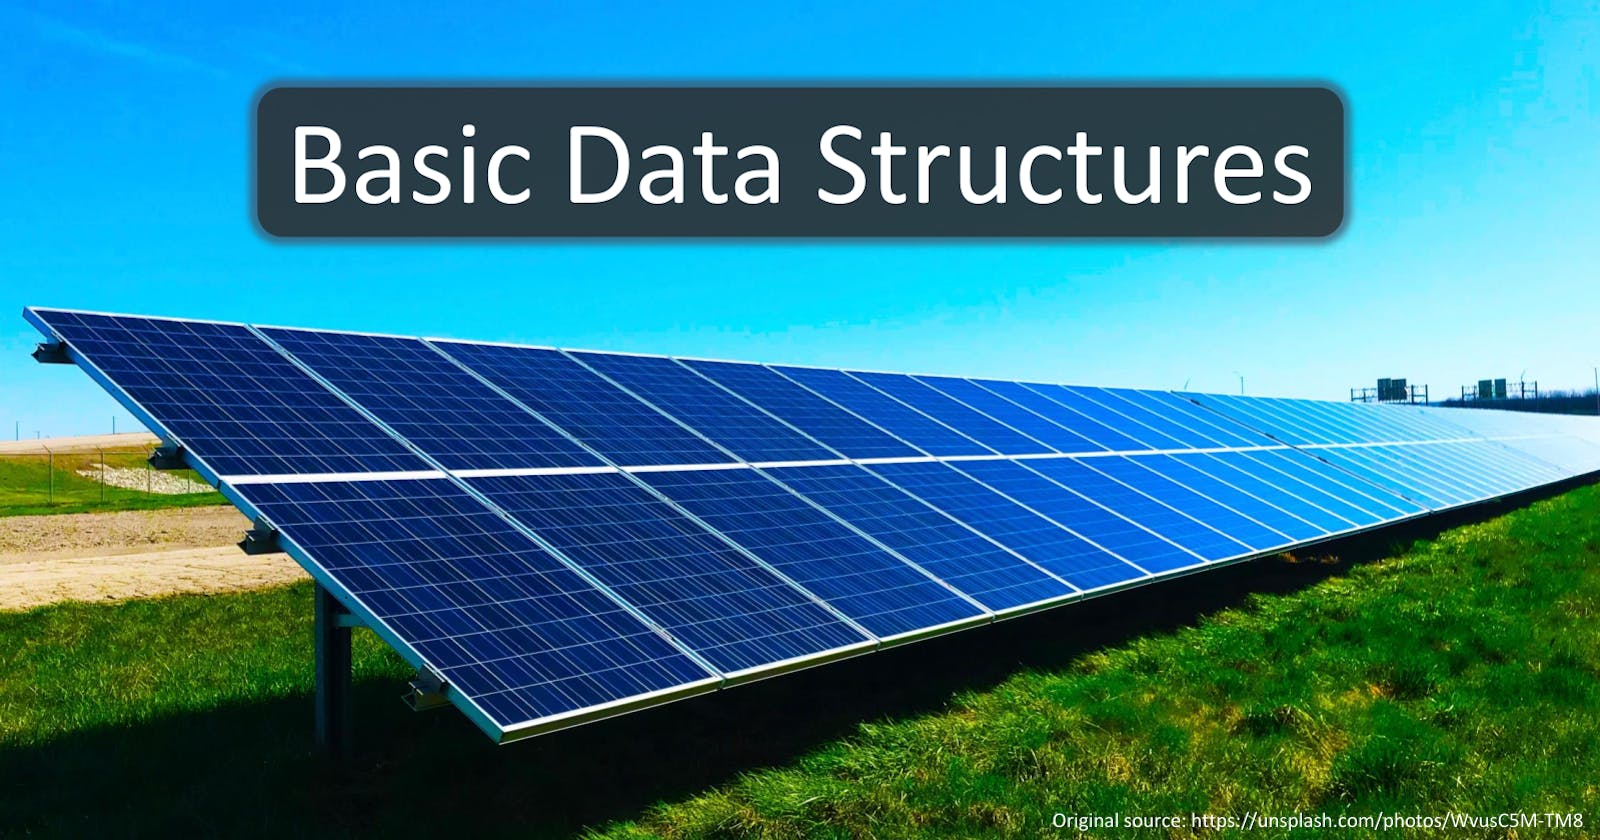 Basic Data Structures Explained